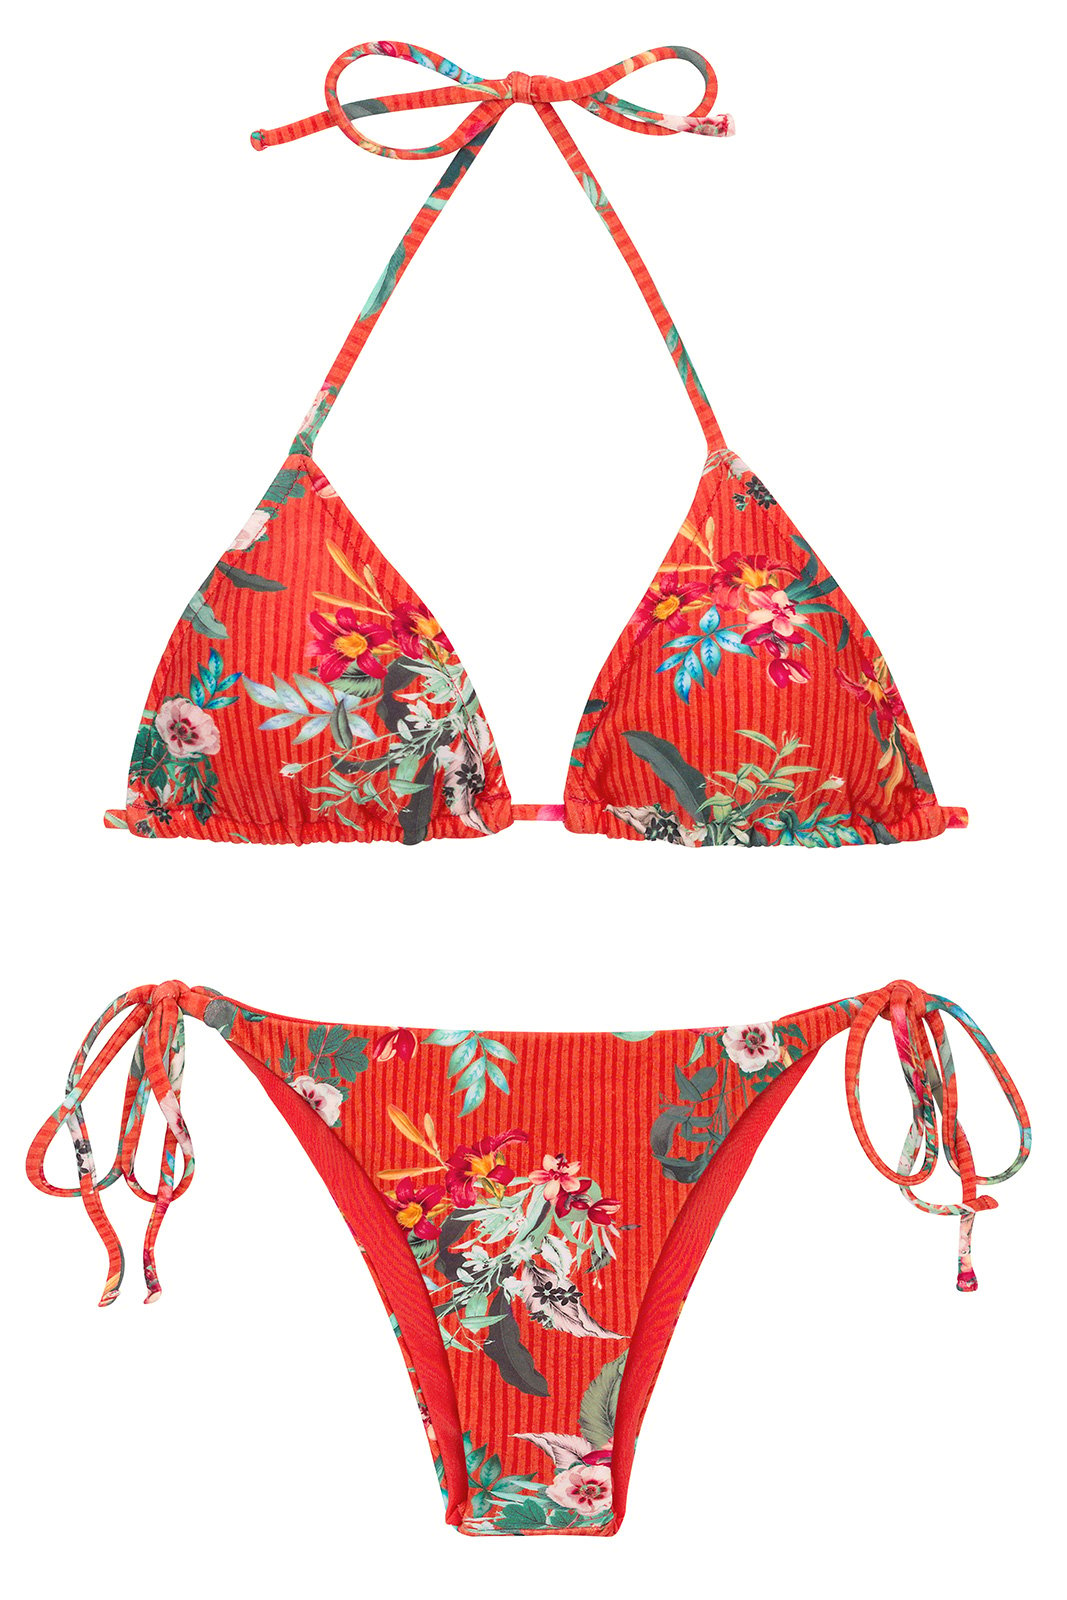 Flower Pattern Side Tie Triangle Bikini Set Bikinis Triangle Bikini My Xxx Hot Girl